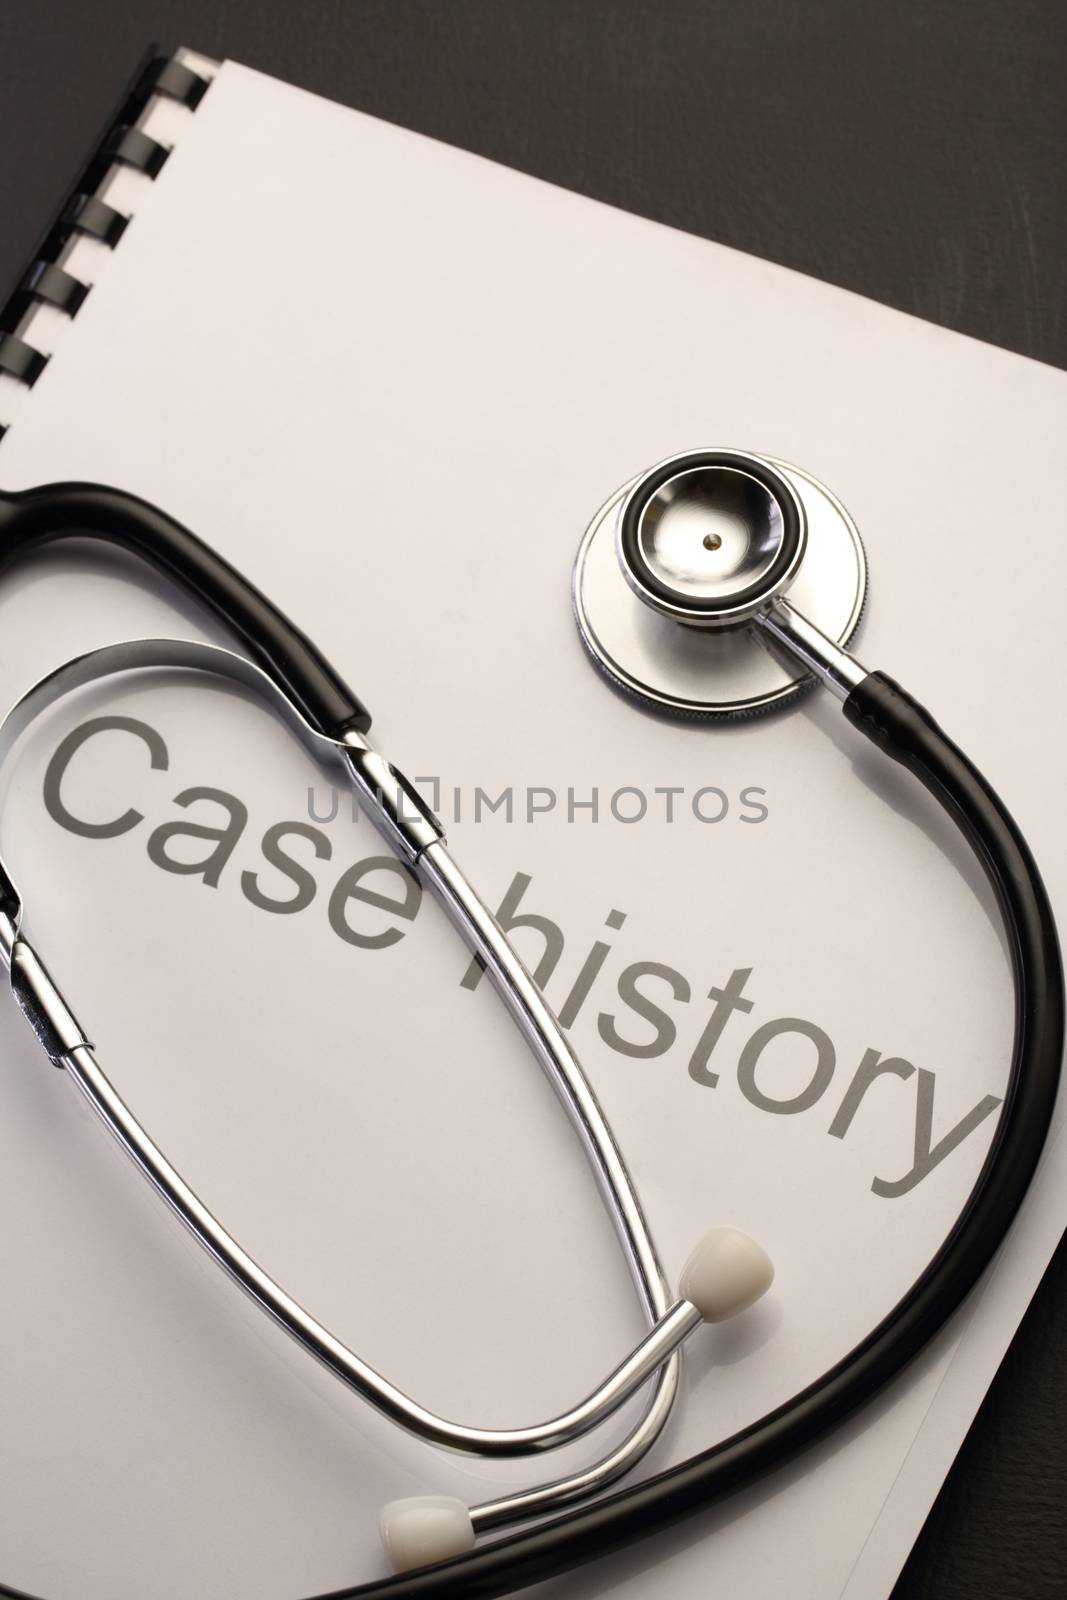 Case history and stethoscope by Garsya